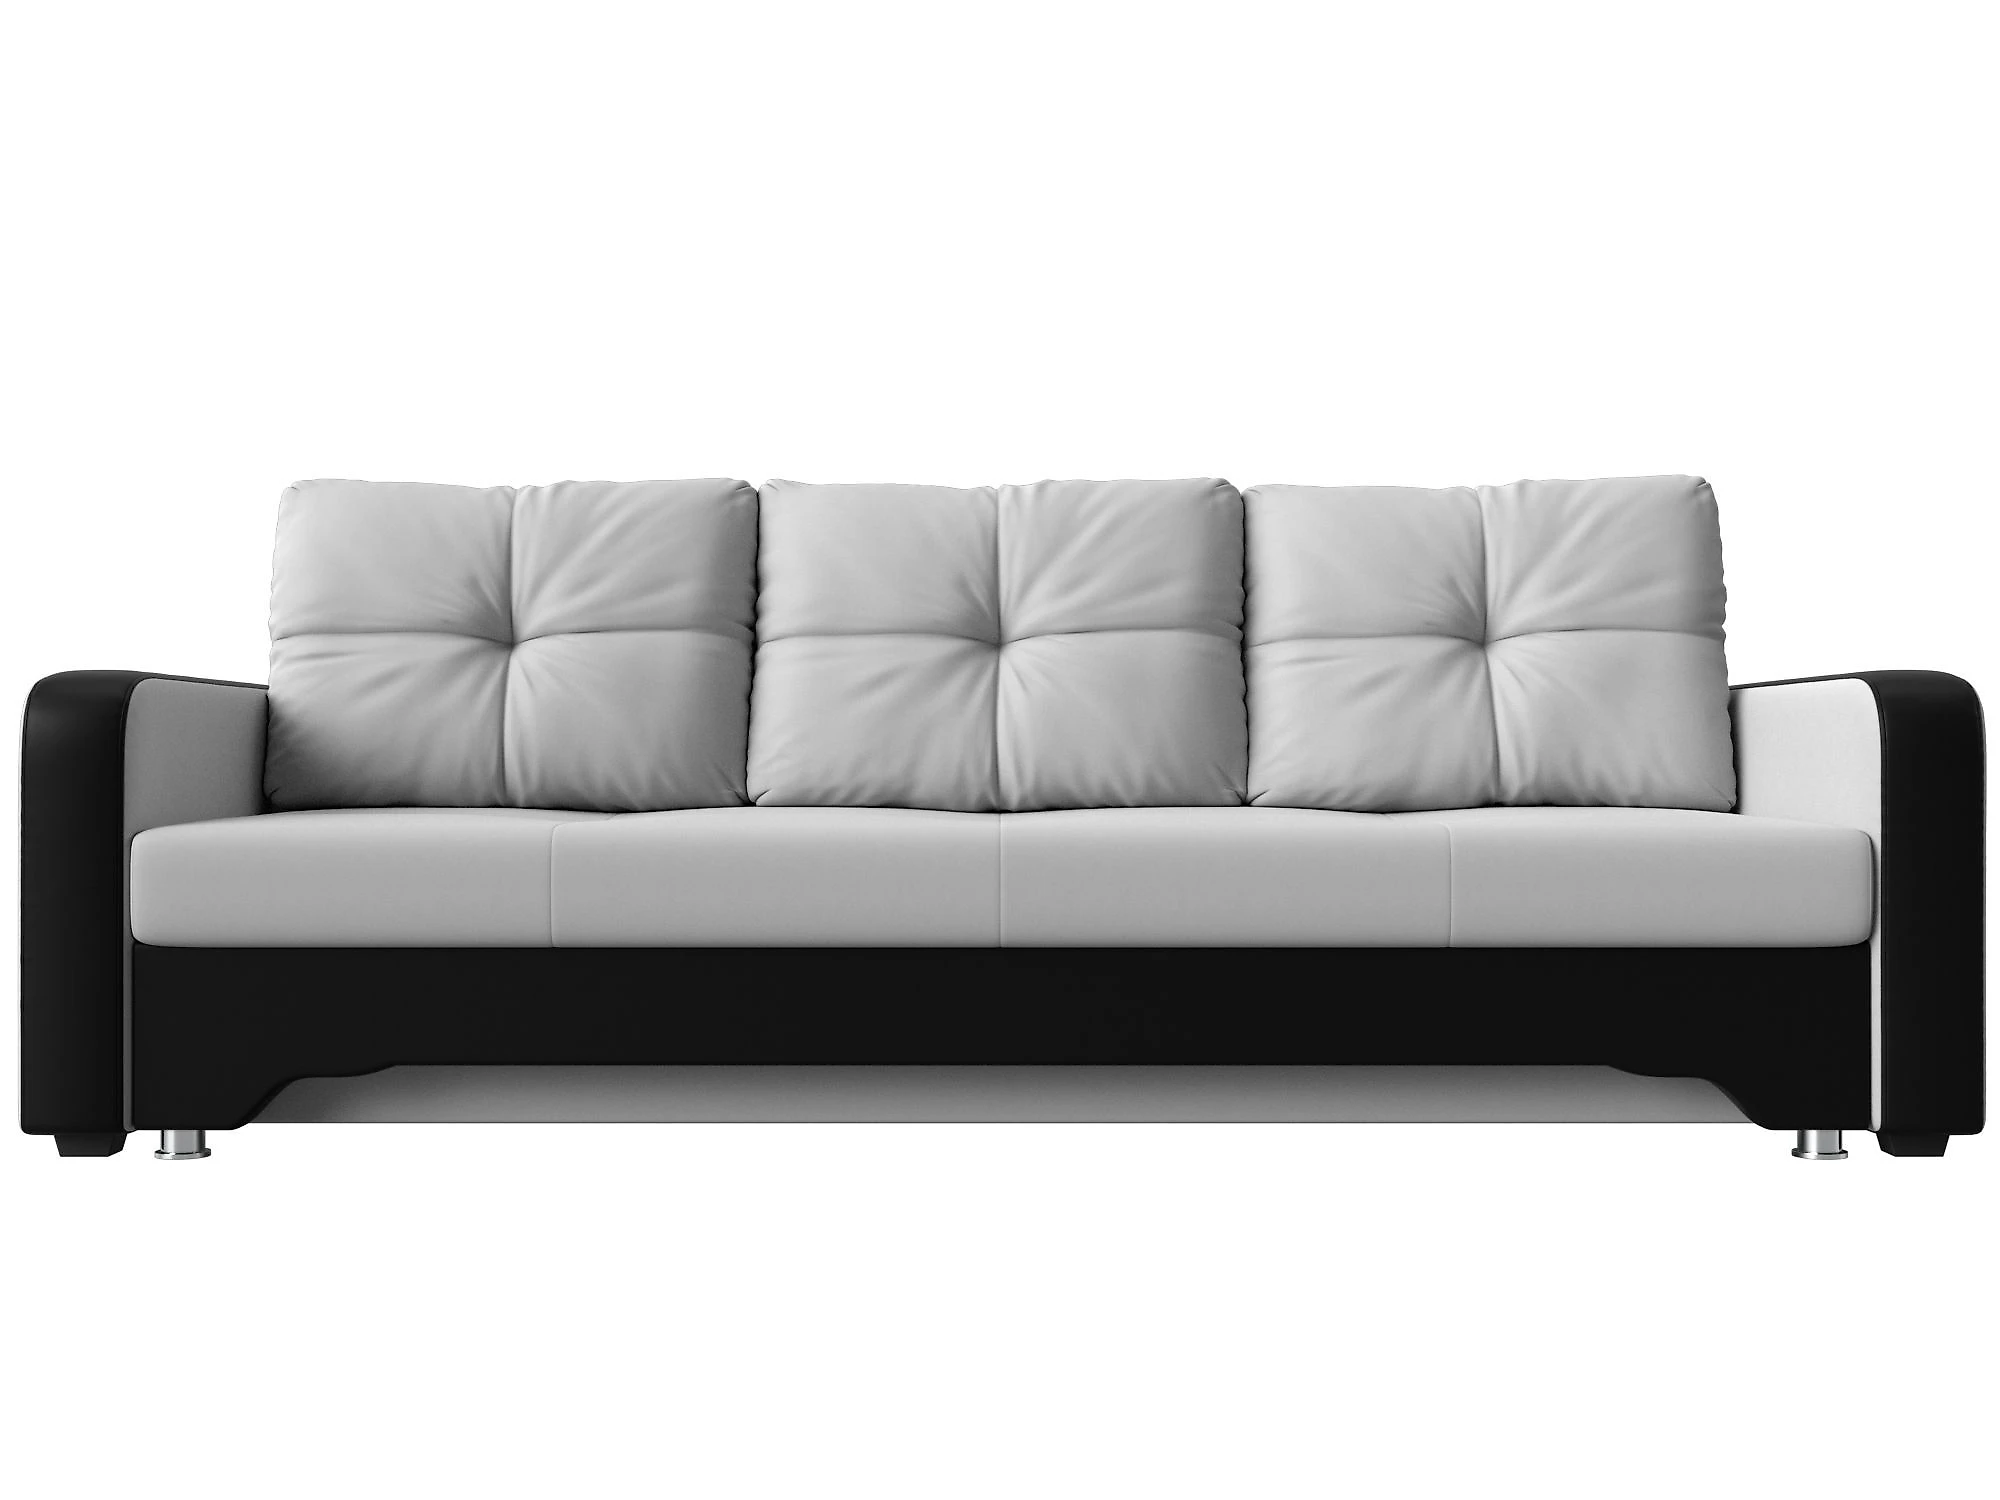  кожаный диван еврокнижка Ник-3 Дизайн 36